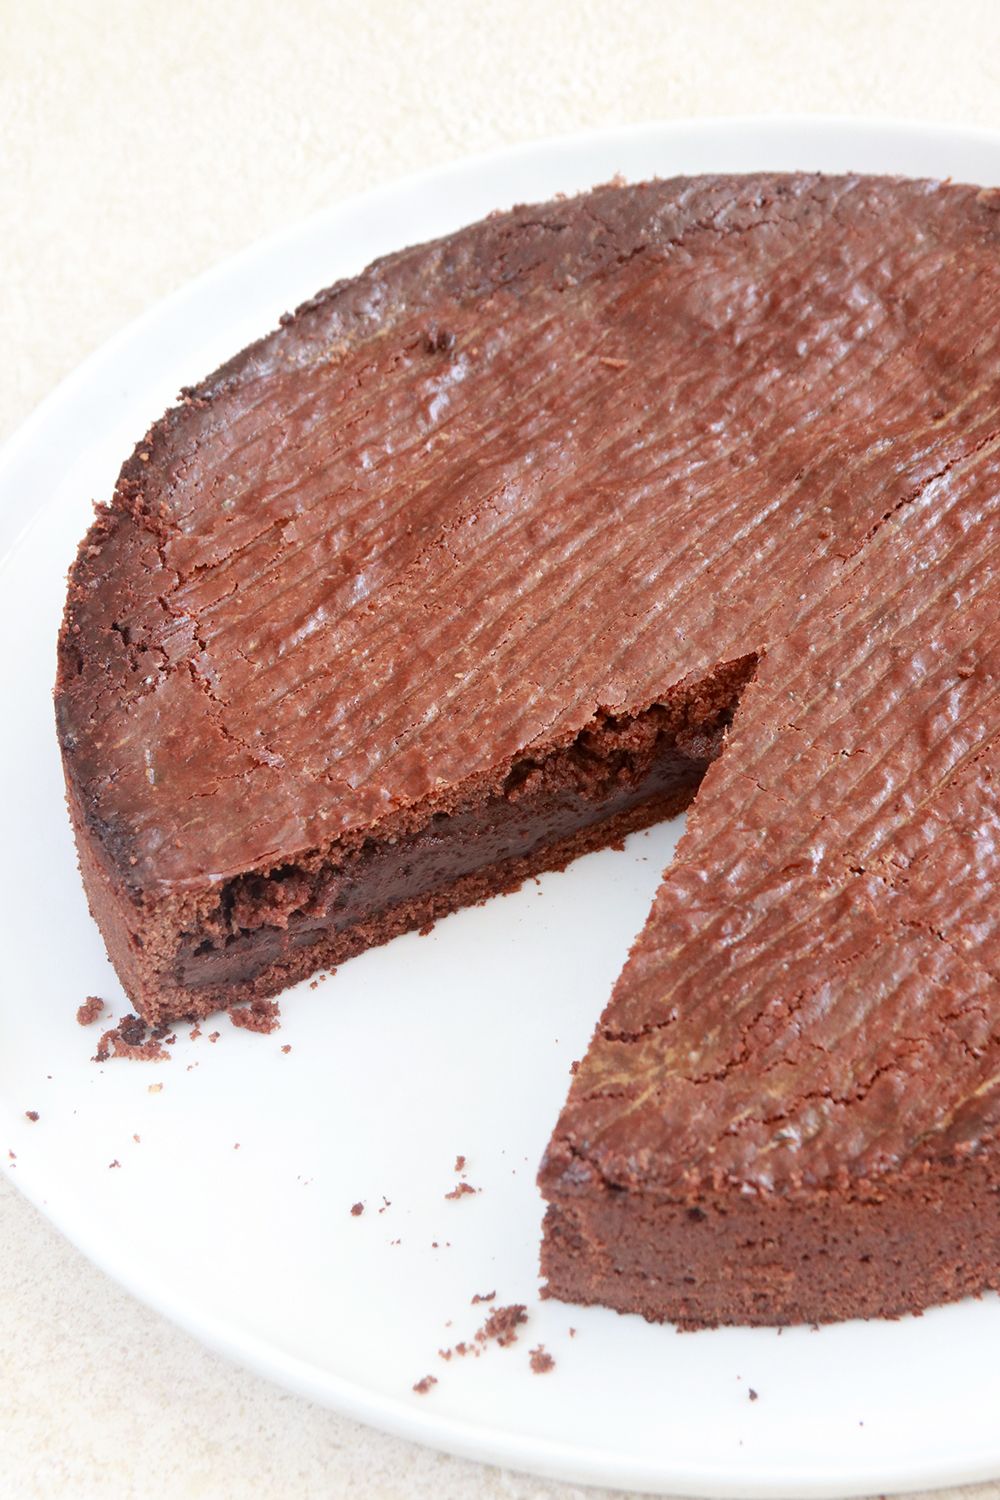 עוגת שוקולד באסקית | צילום: נטלי לוין